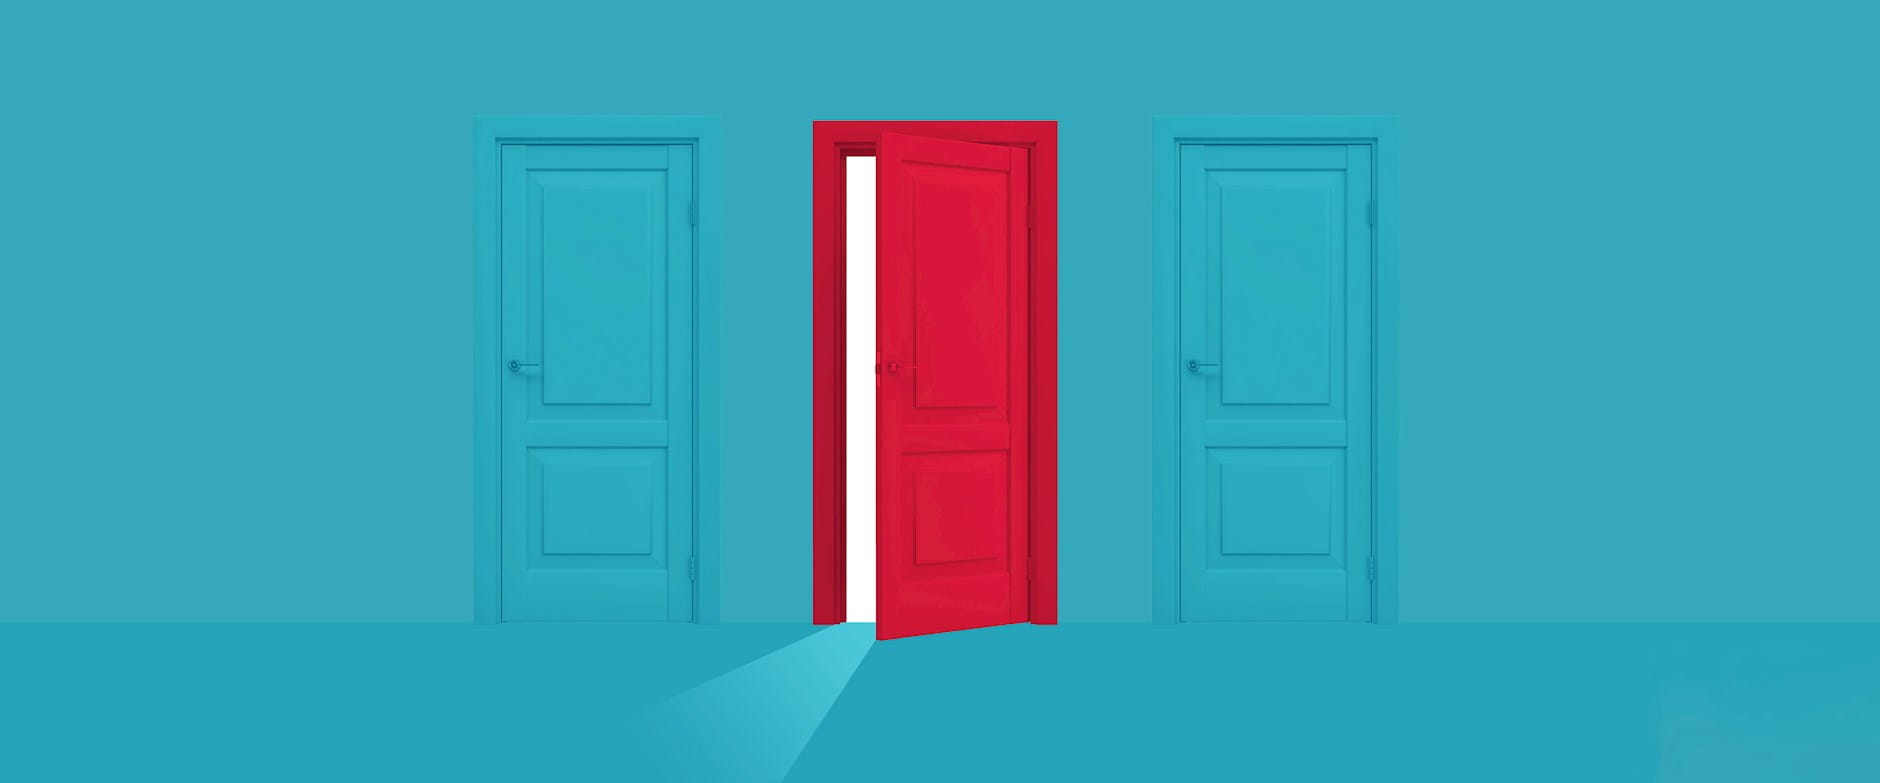 Red door between two blue doors